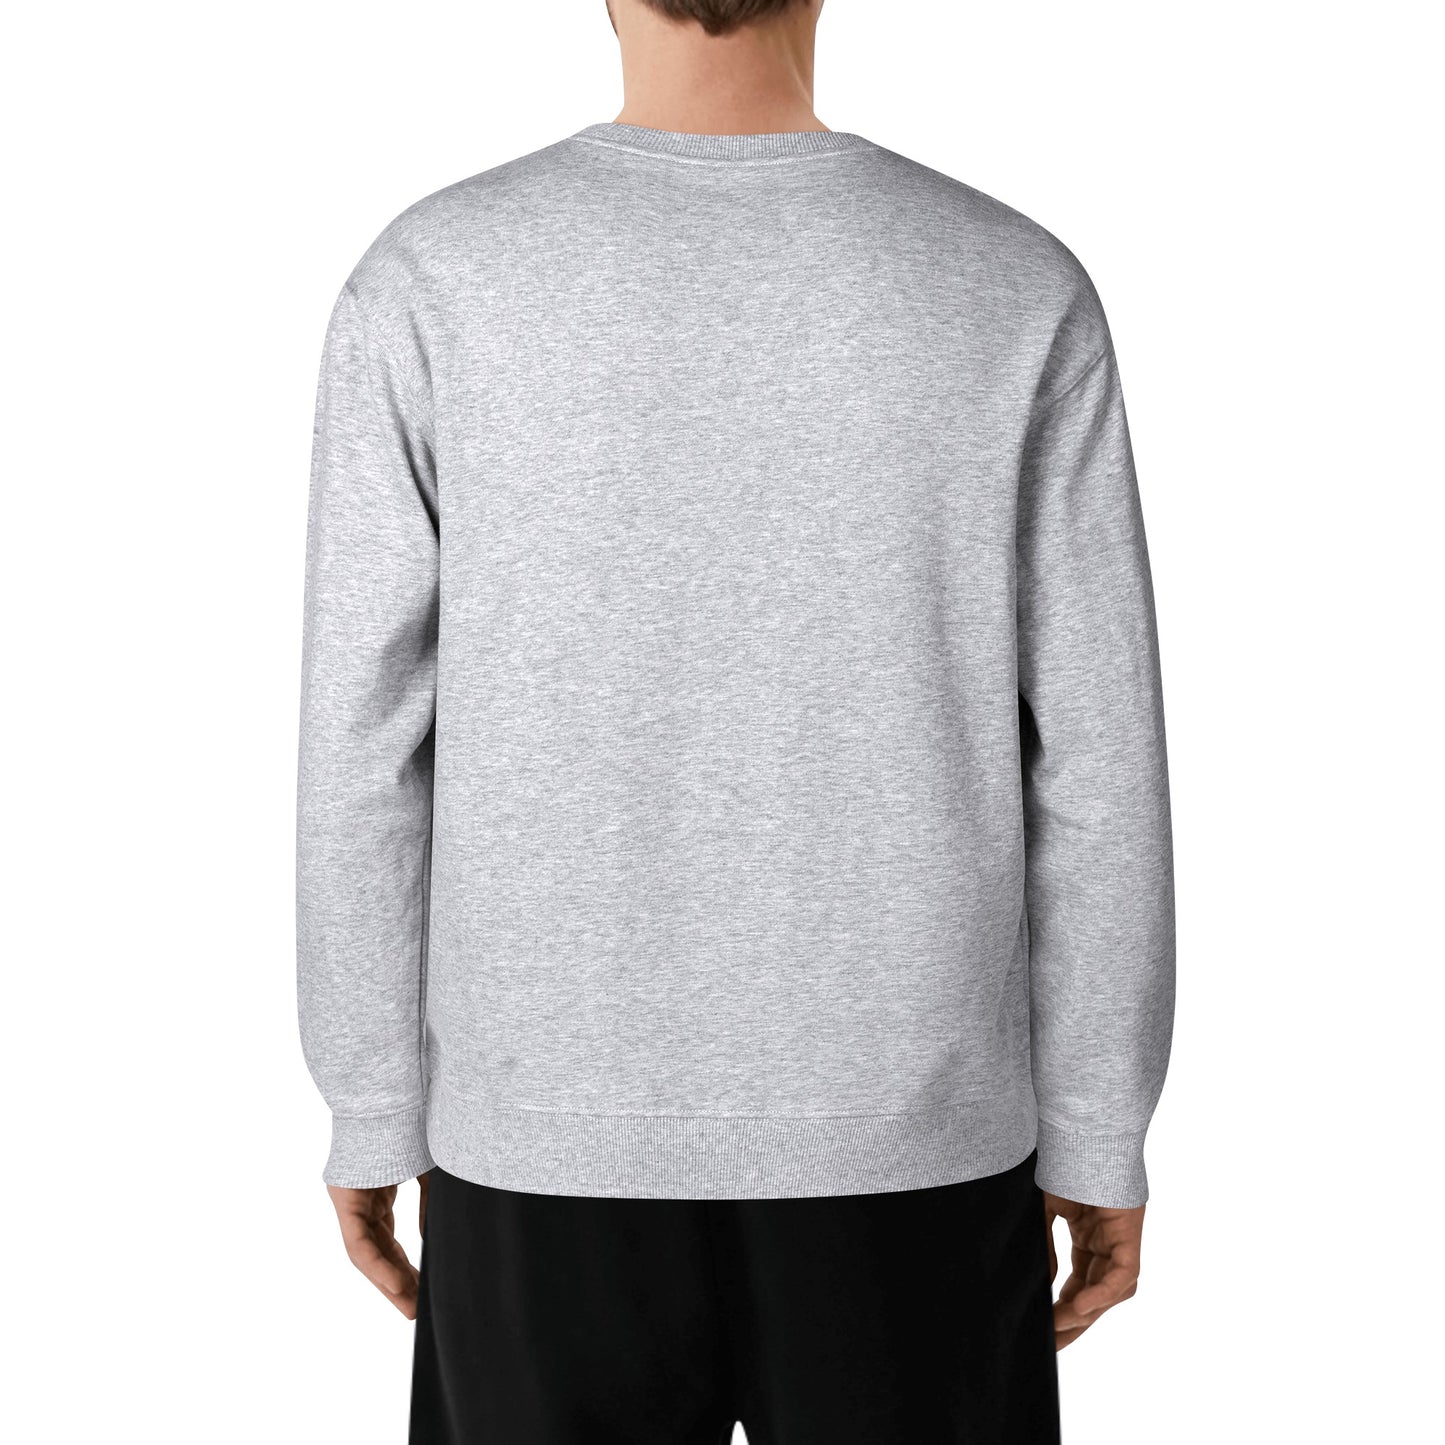 FIGARO SAV Adult Cotton Sweatershirt